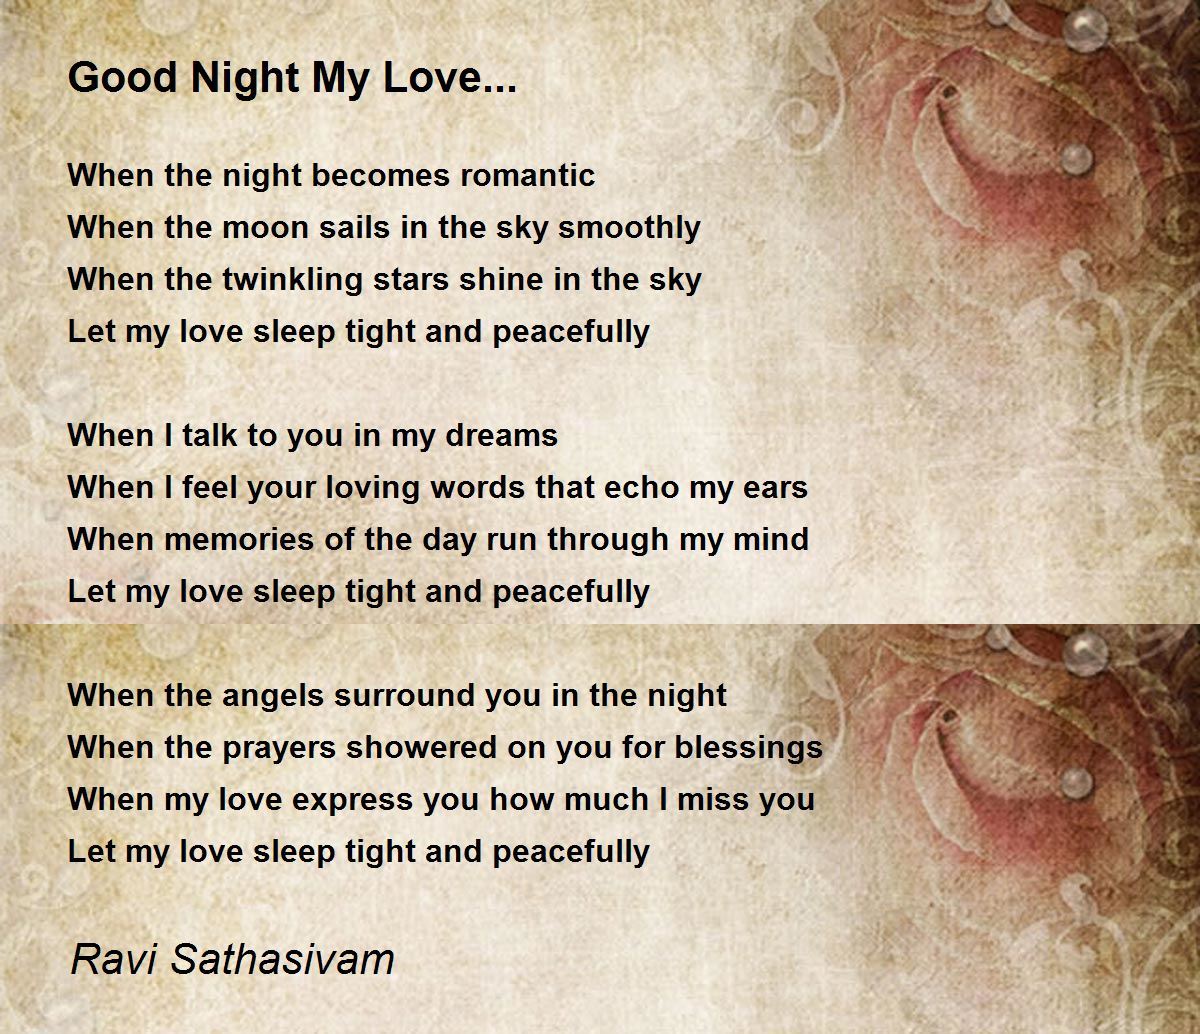 My love poem sweet dreams Sweet Dreams